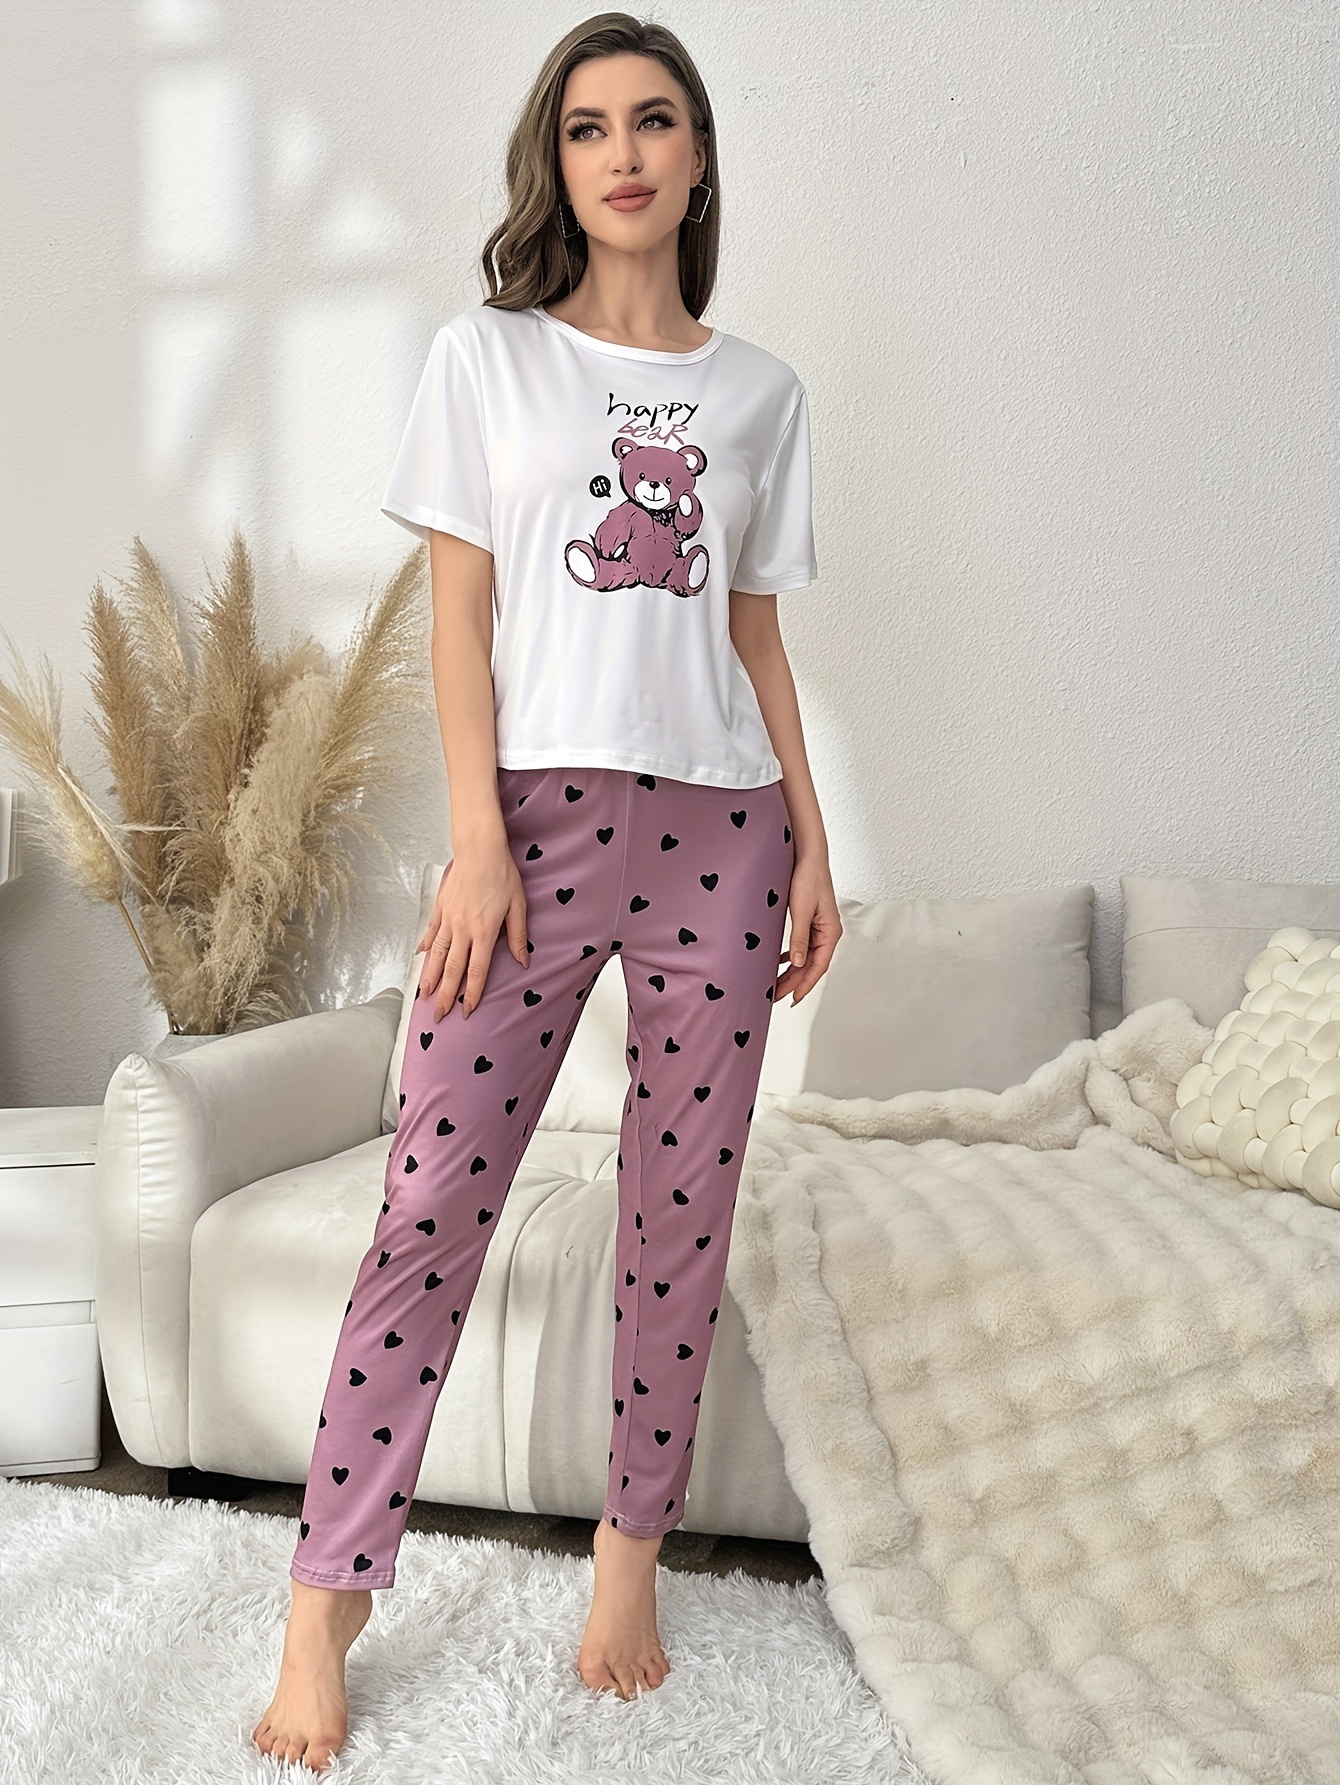 Cartoon & Letter Print Pajama Set  Cute sleepwear, Pajama set, Sleepwear  women pajamas